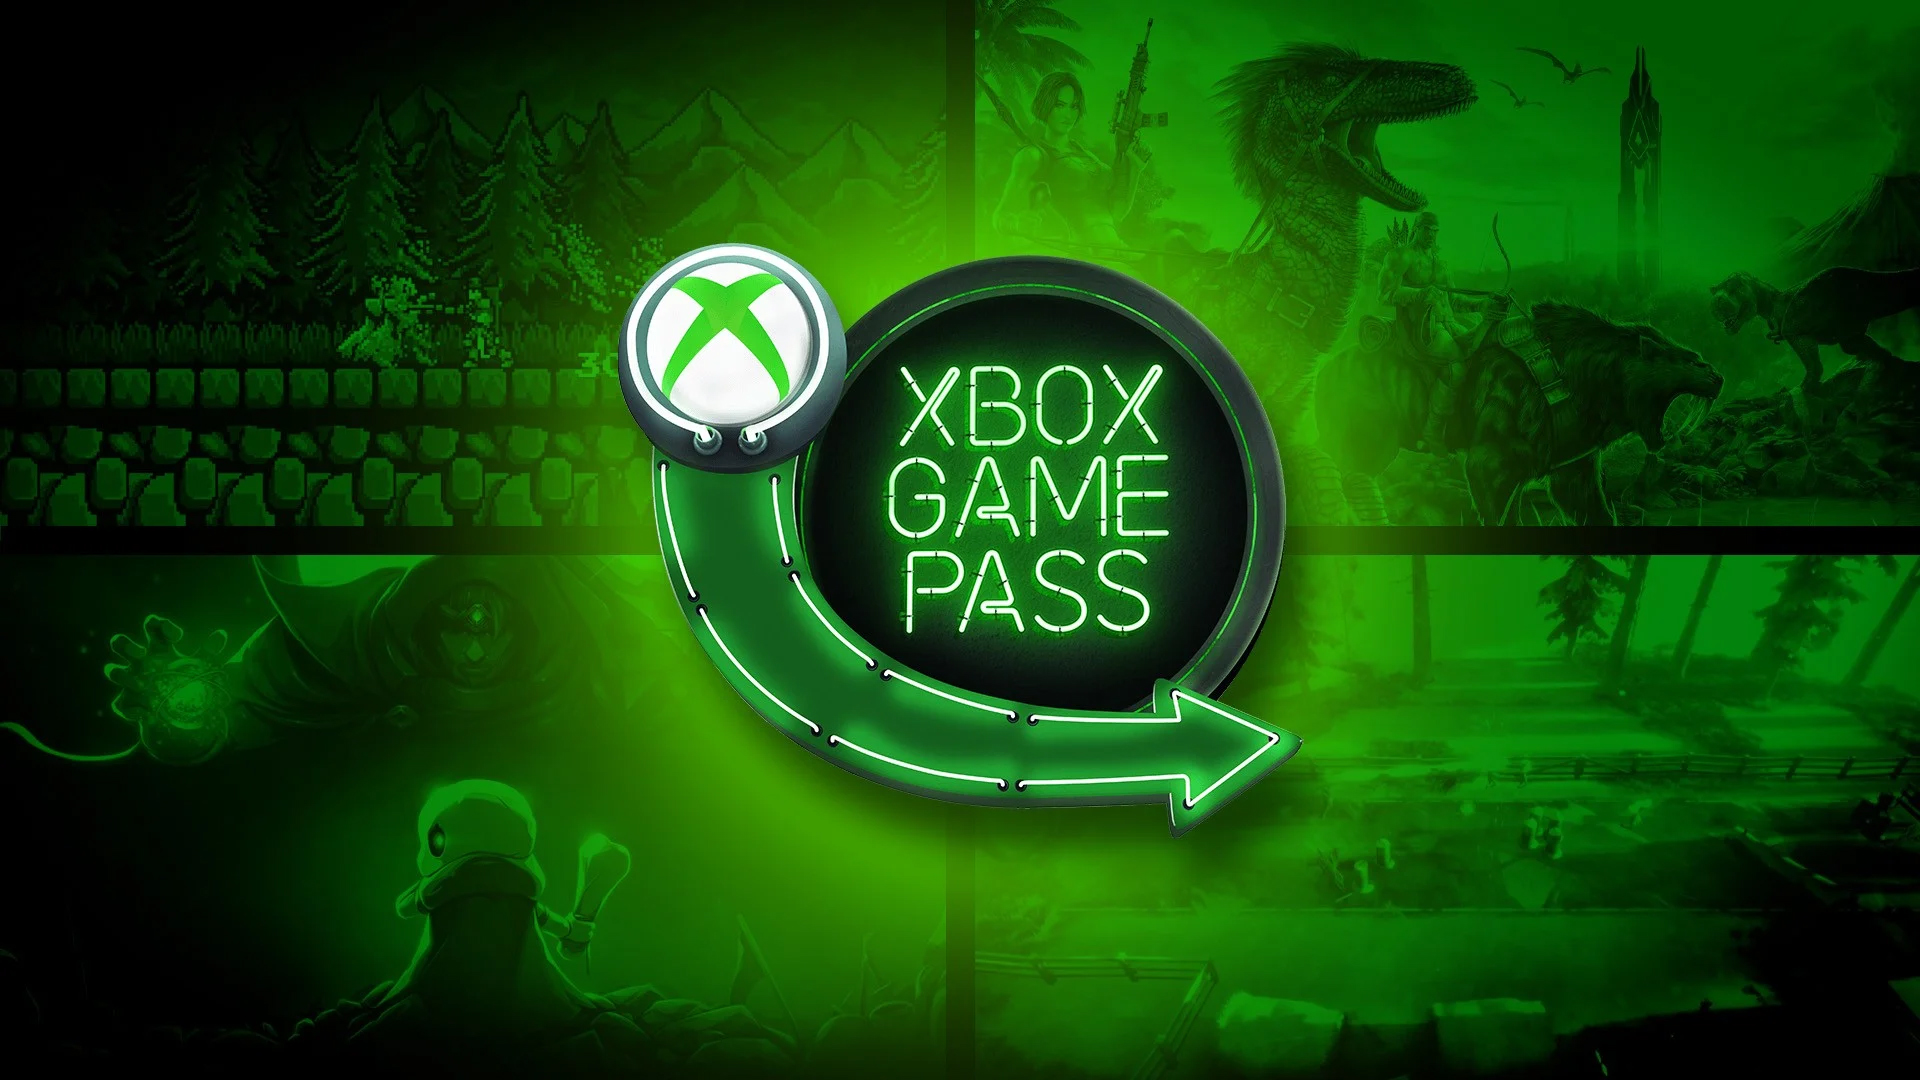 Xbox Game Pass finalmente ganha recurso esperado pelos assinantes; confira!